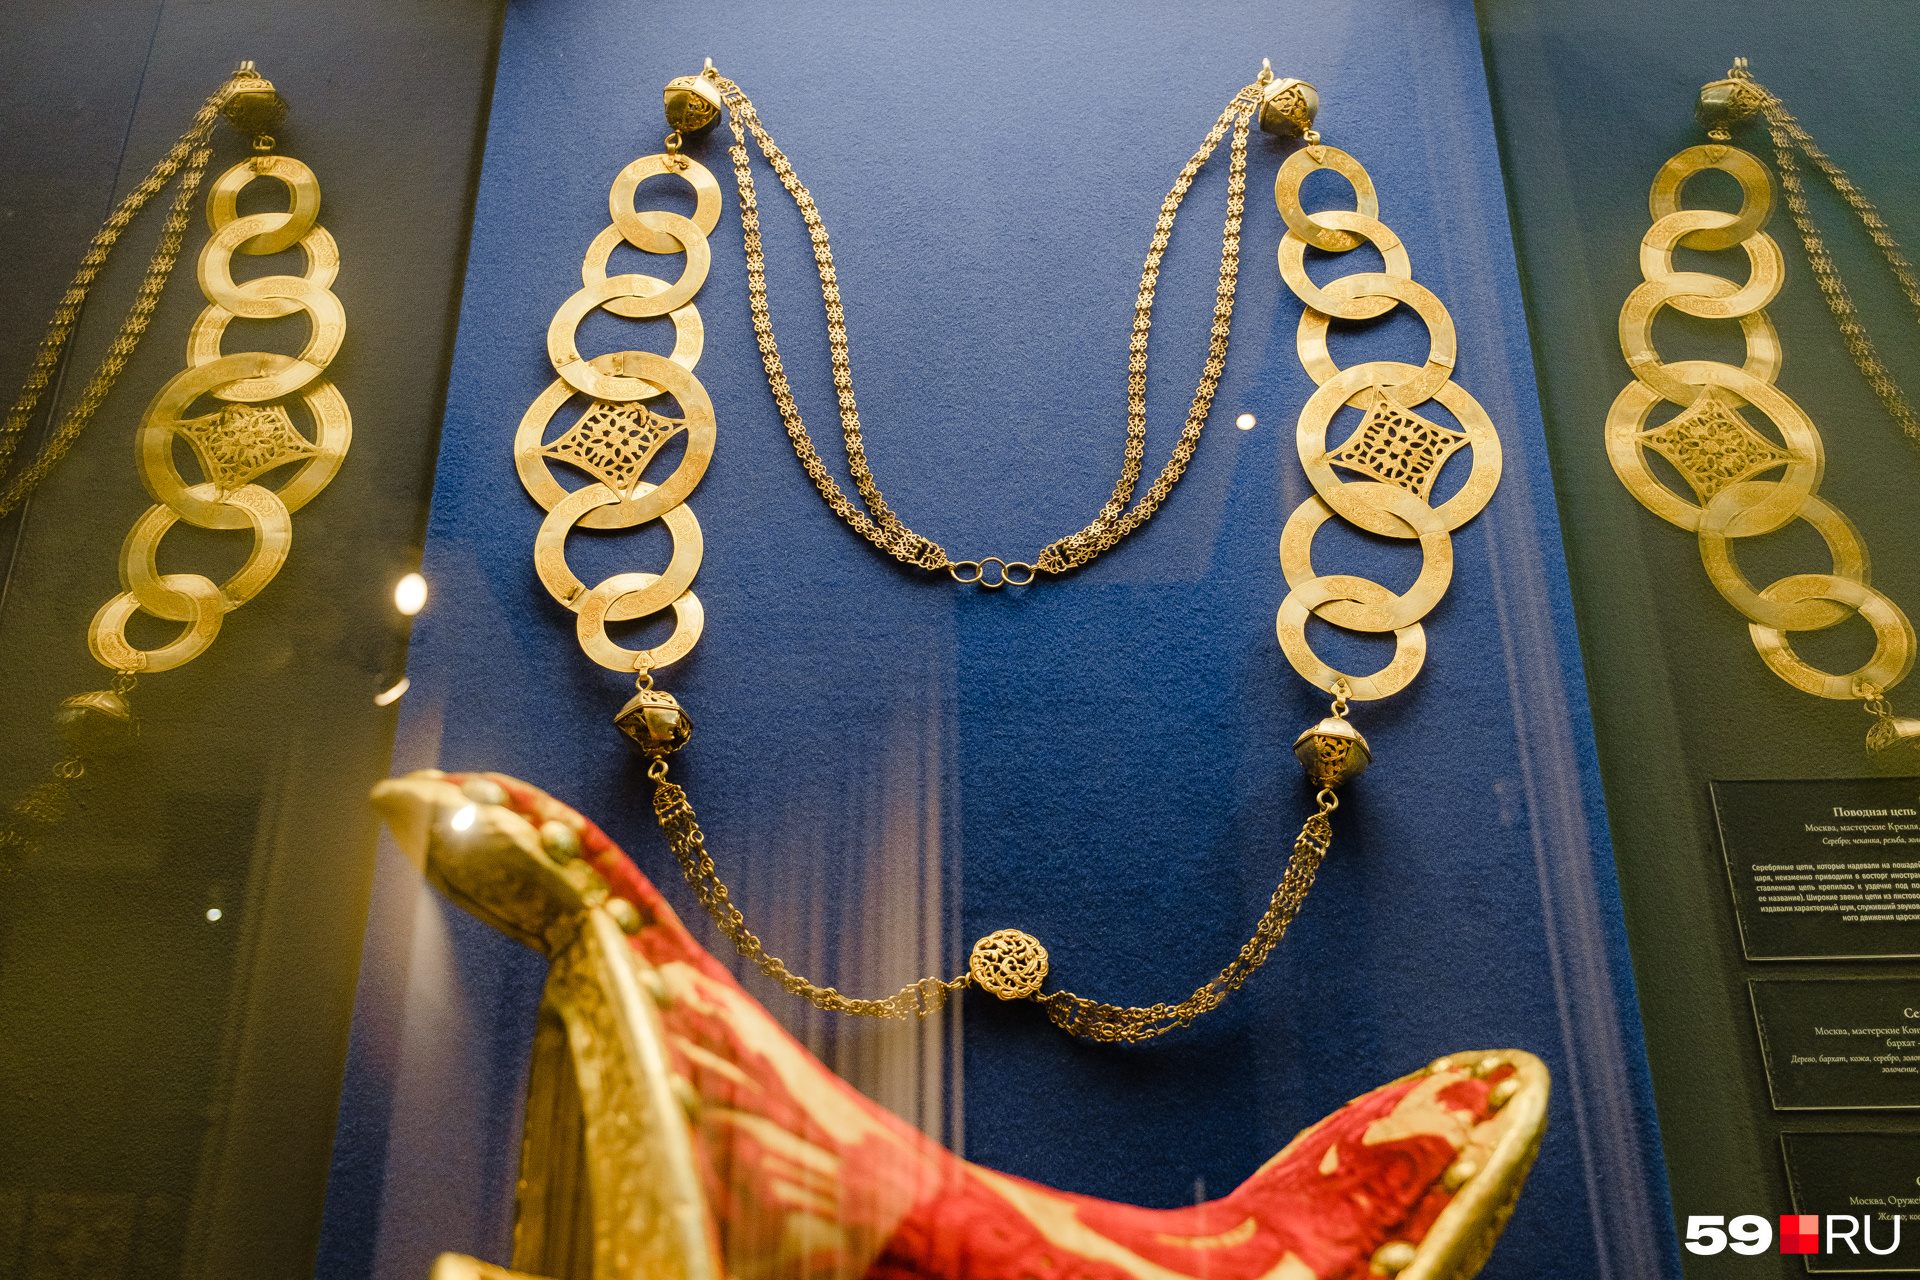 Поводная цепь для коня сделана их серебра и позолочена. Ее использовали во время царских парадов, ее звон приводил в восторг иностранных гостей